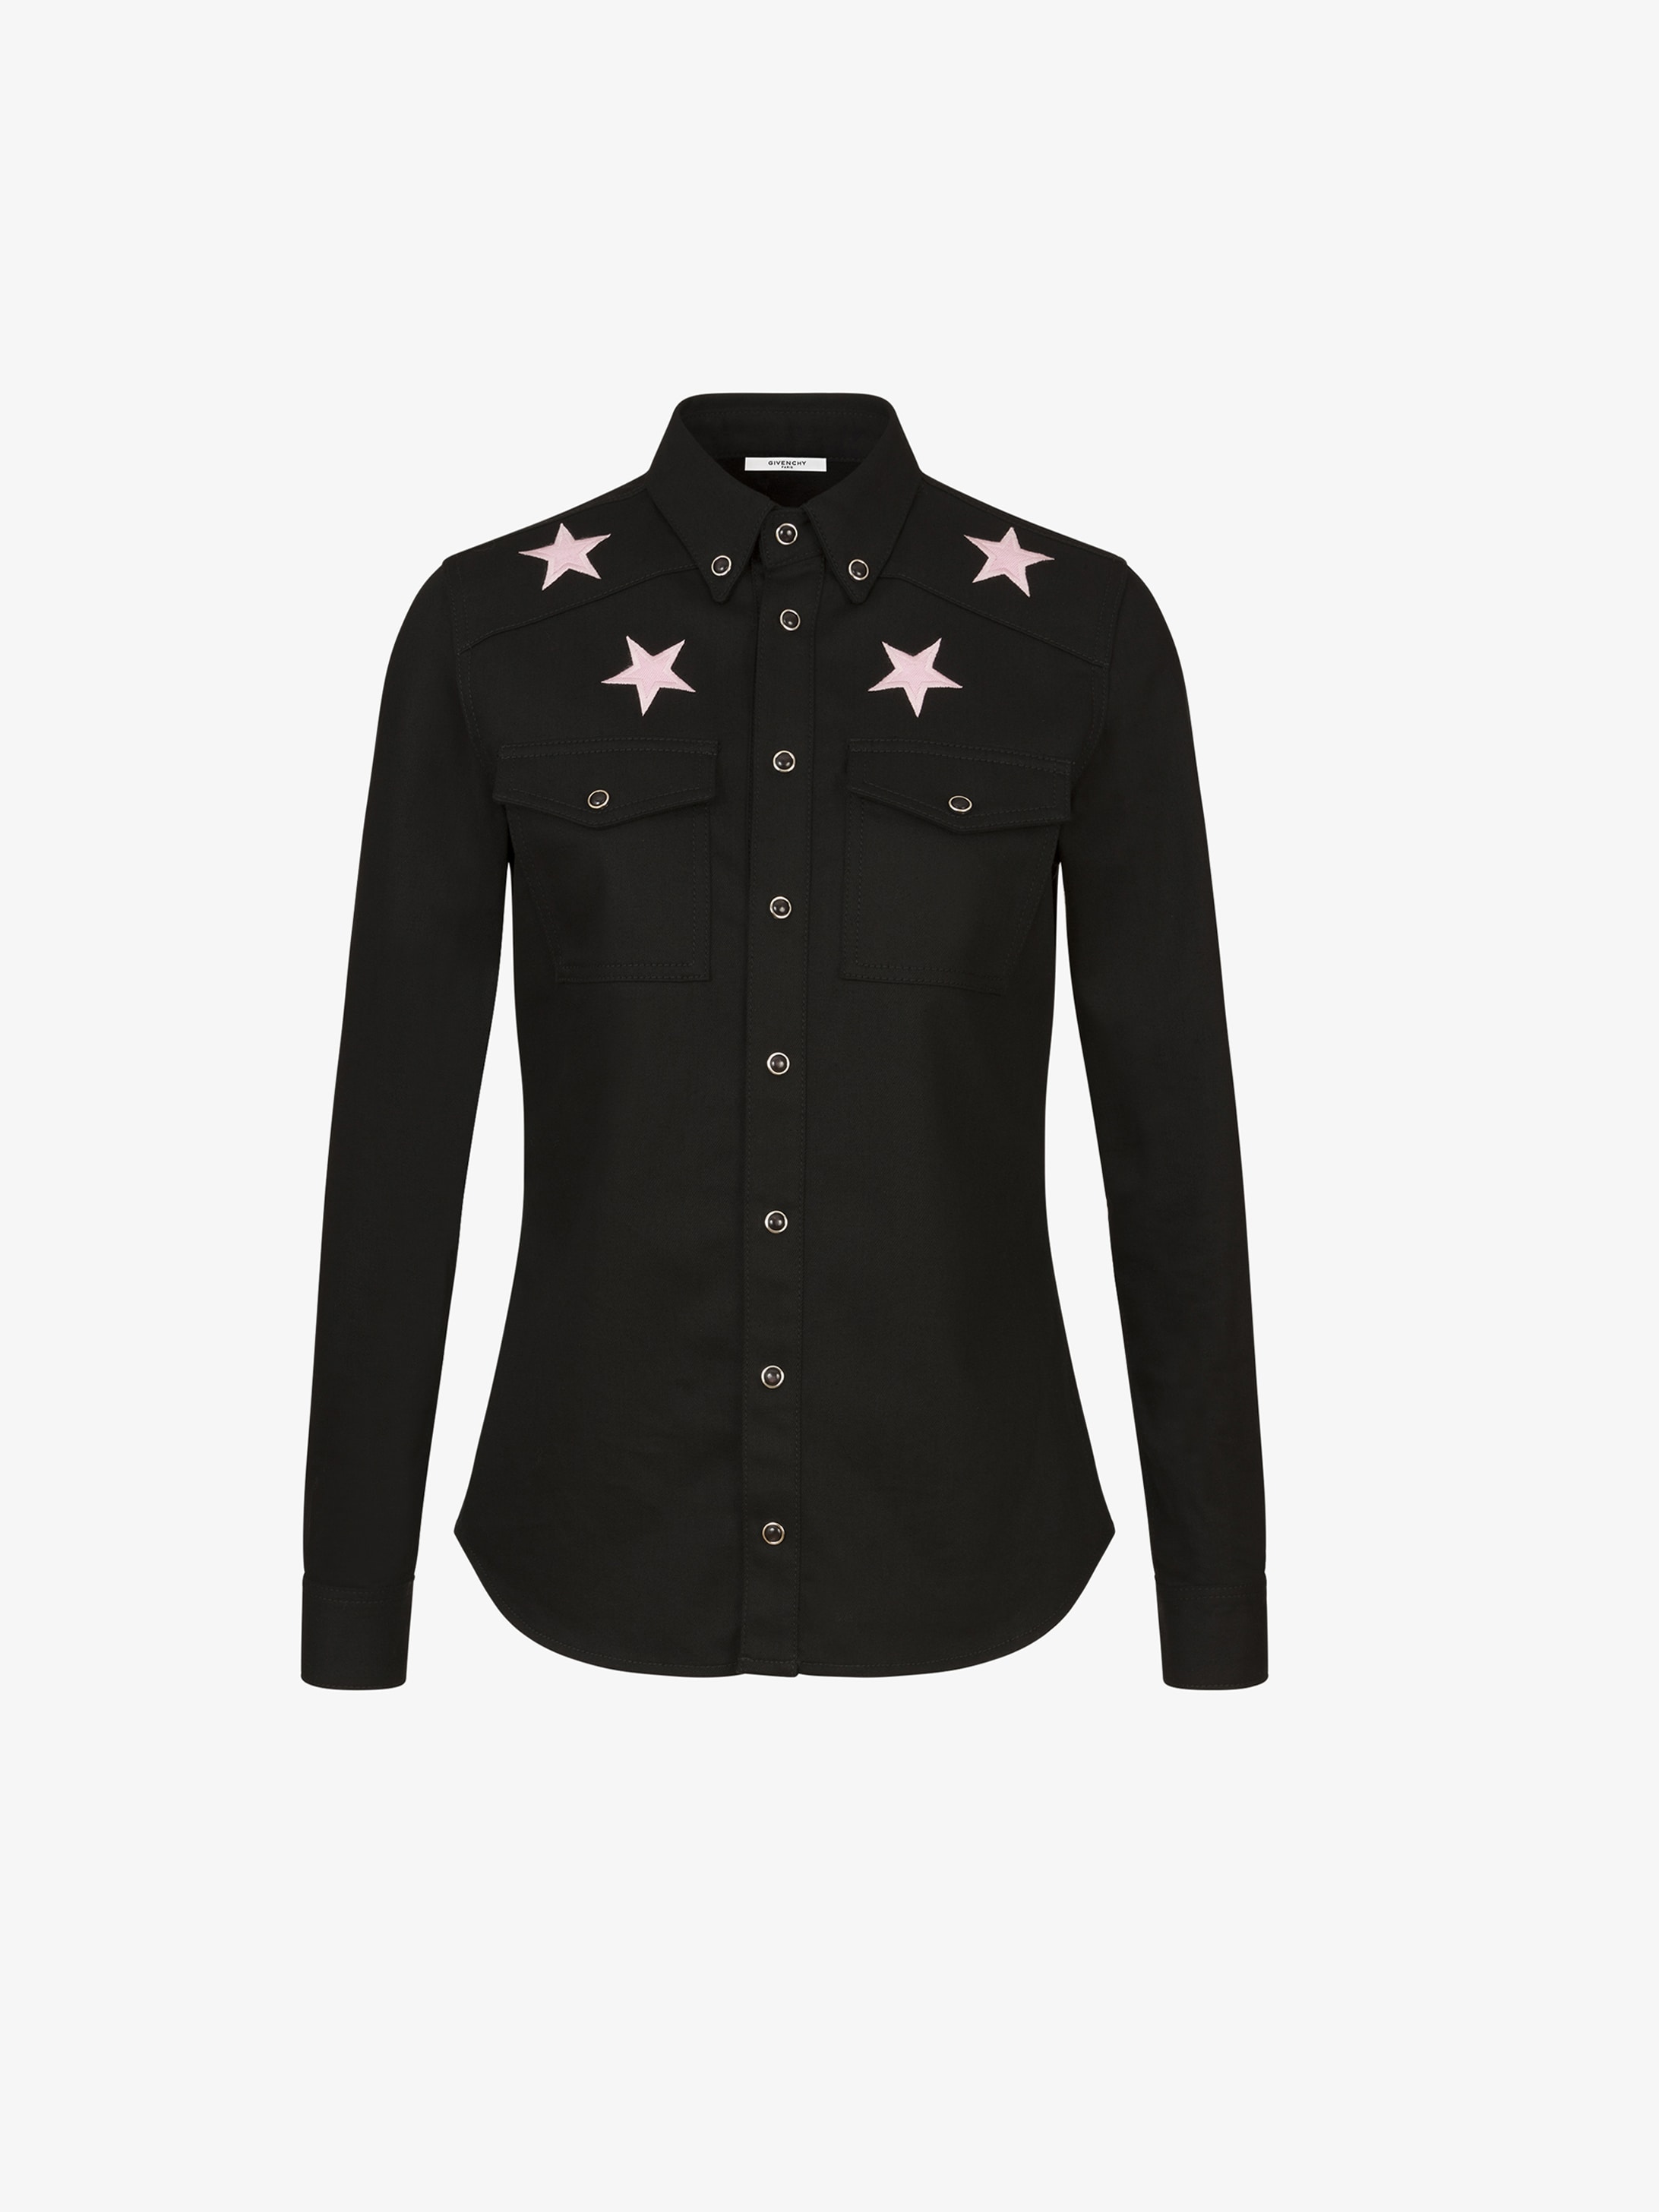 Givenchy Stars denim shirt | GIVENCHY Paris